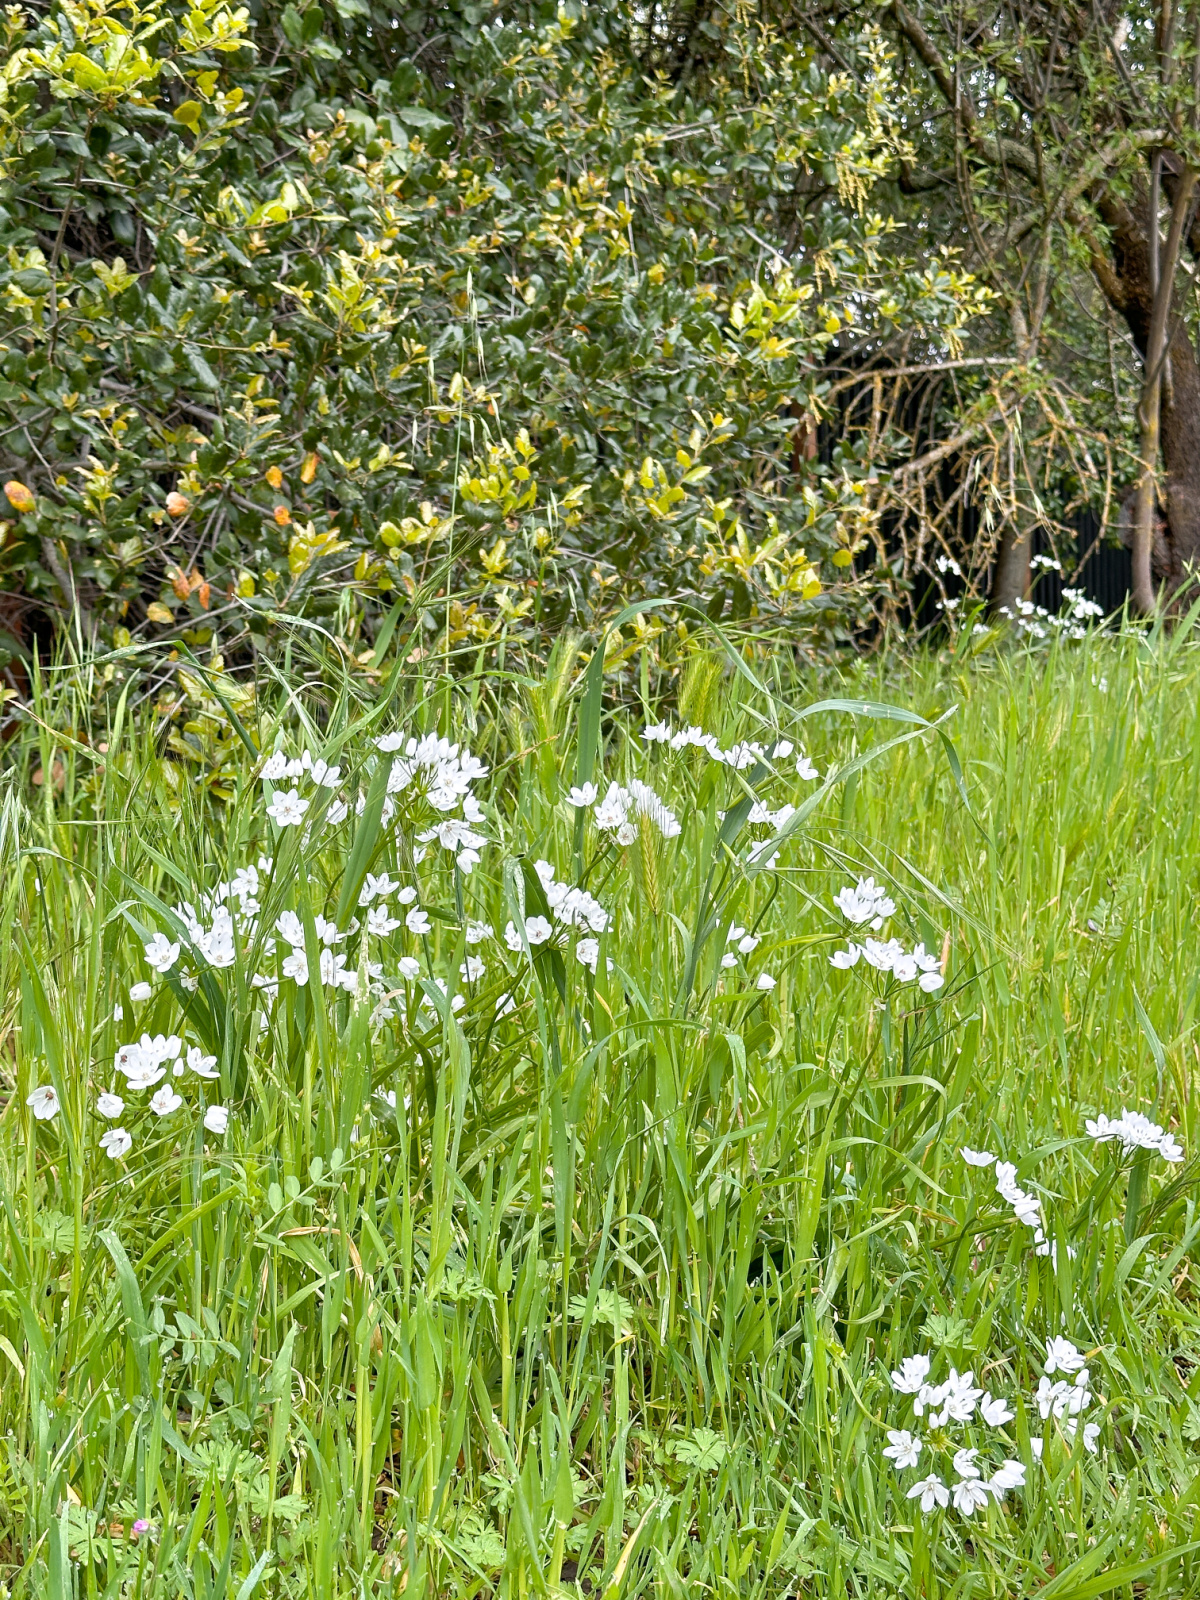 Wild flowers in field.